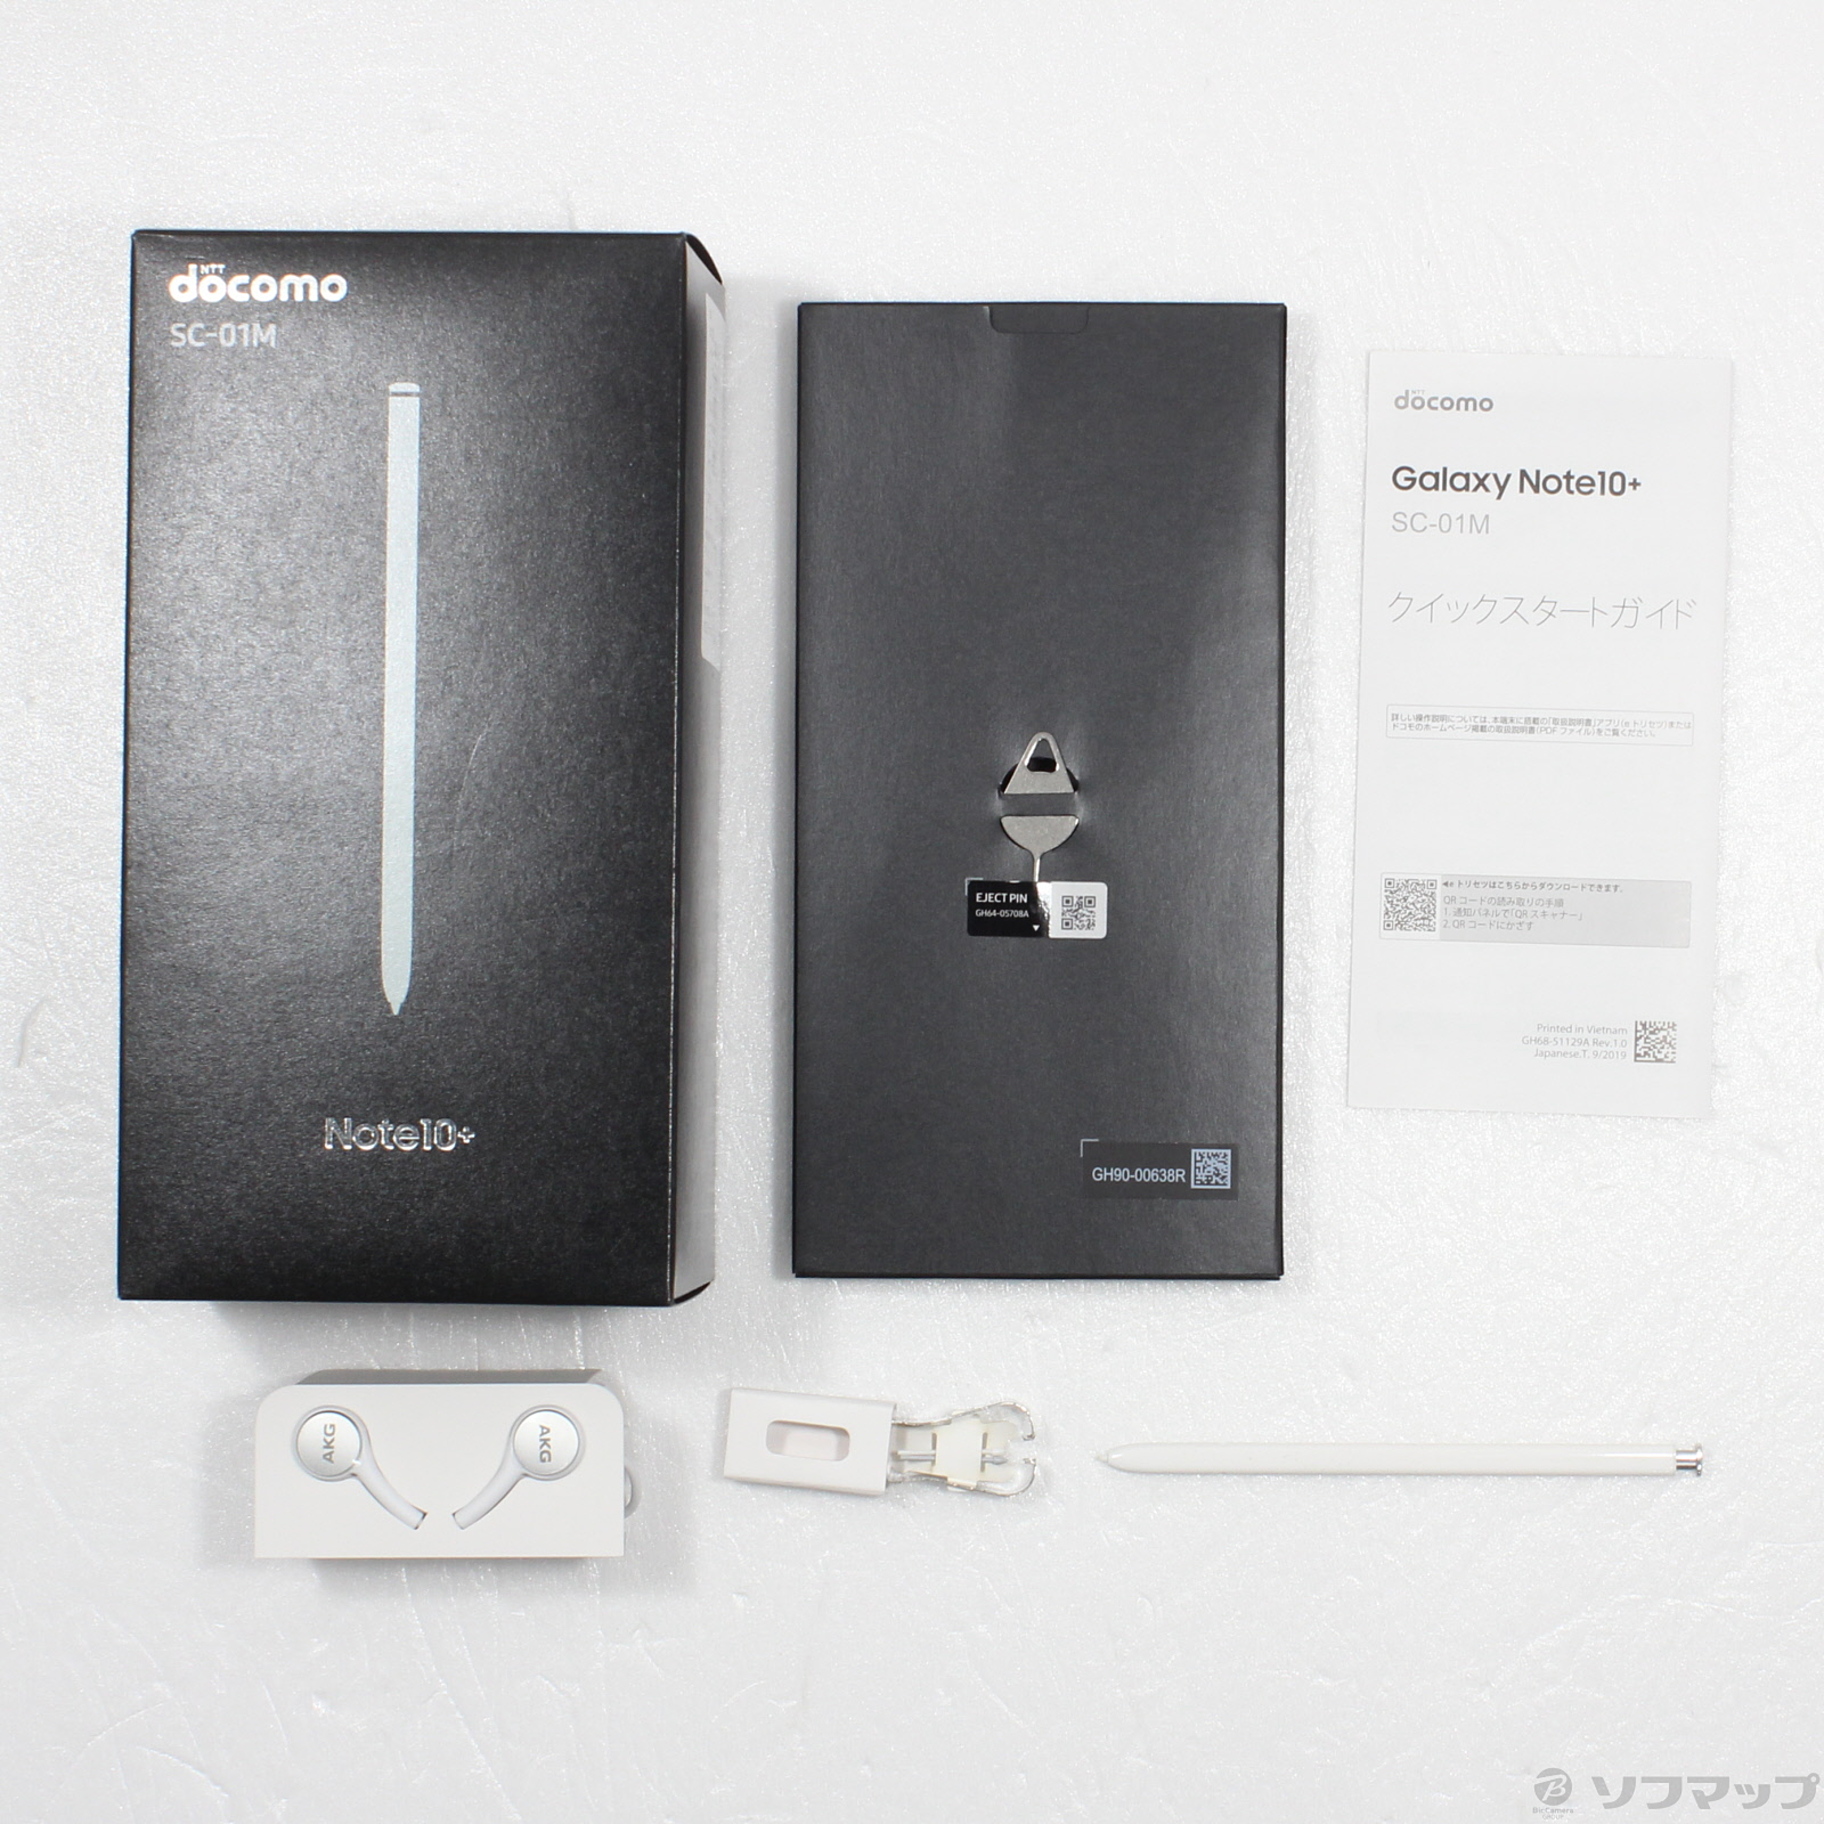 Galaxy Note10+ オーラブラック 256 GB docomo - スマートフォン本体